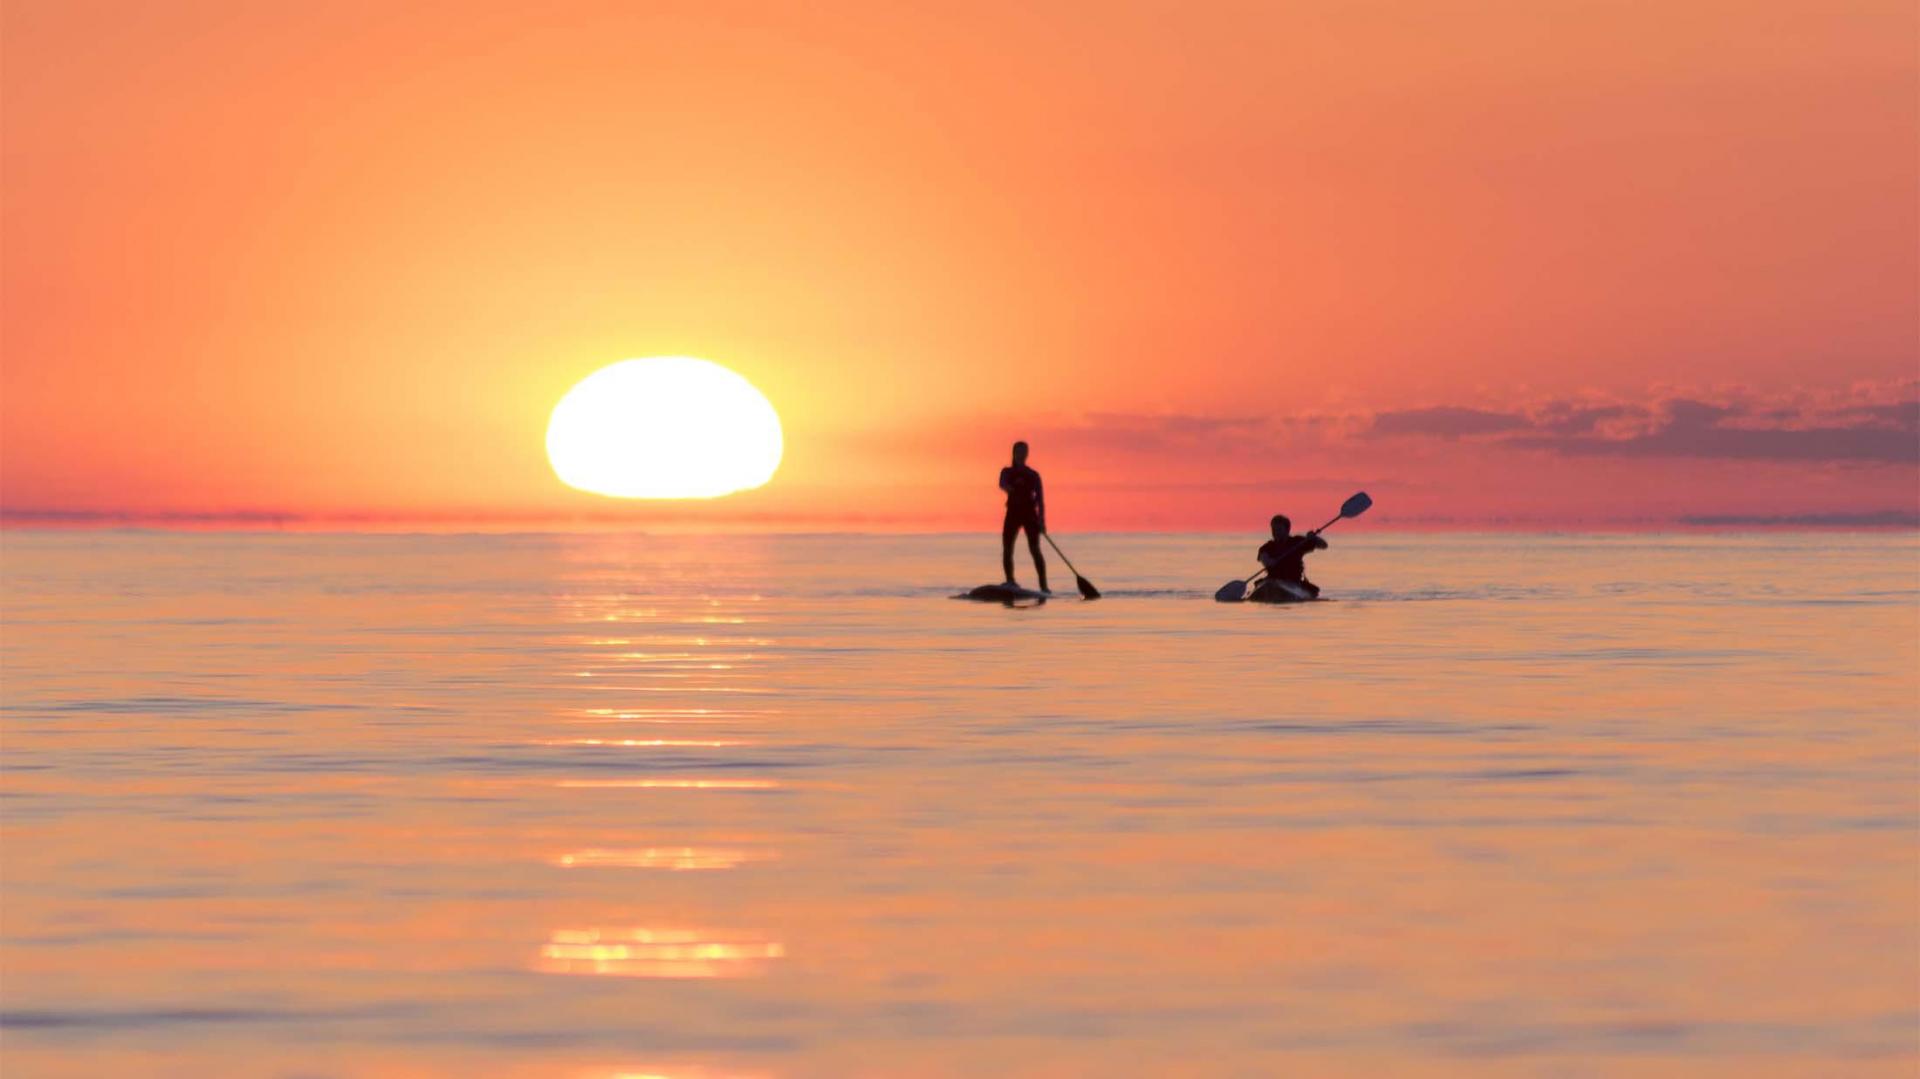 Two people paddling at sunset on Lake Michigan.